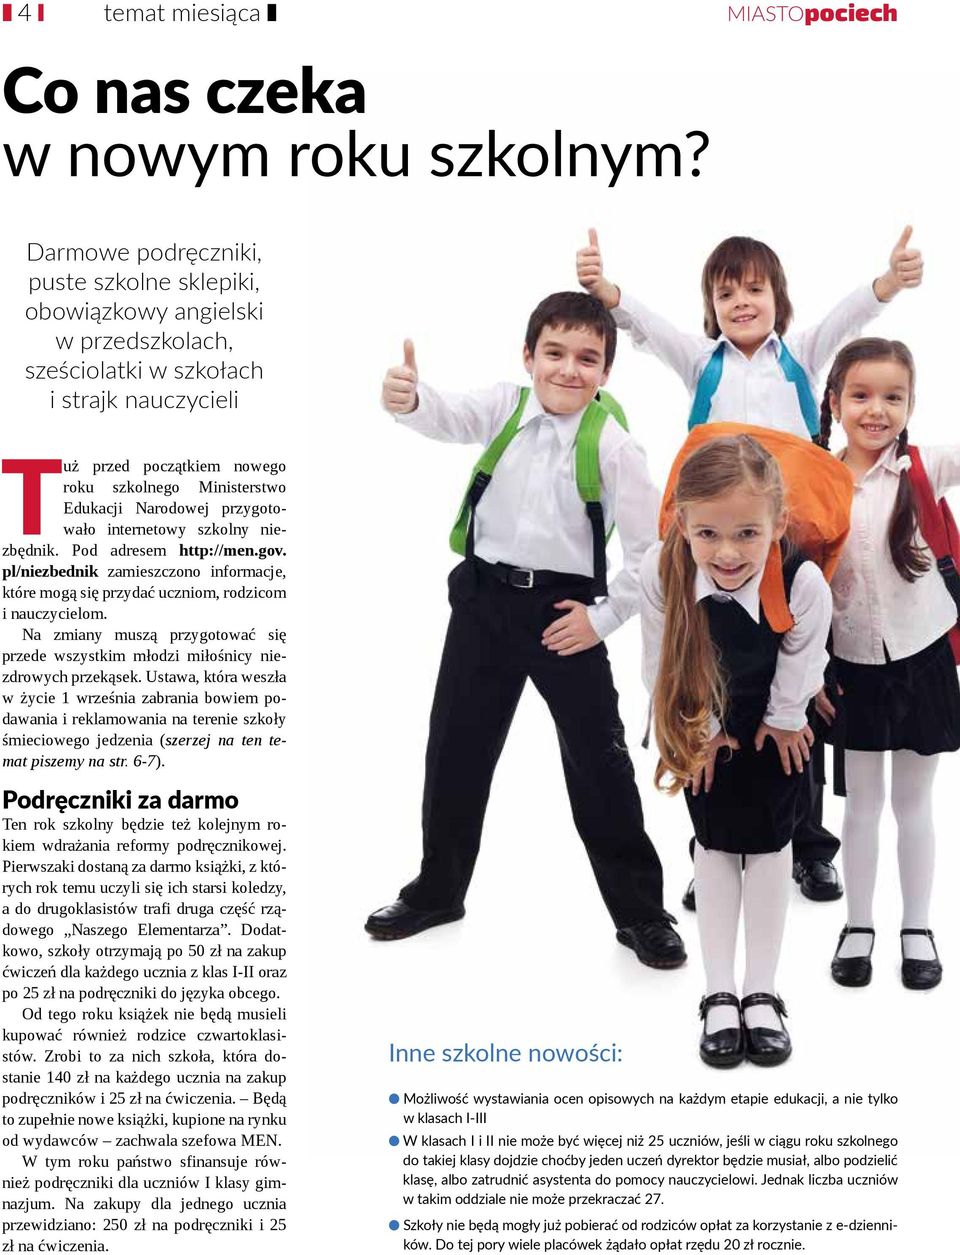 Narodowej przygotowało internetowy szkolny niezbędnik. Pod adresem http://men.gov. pl/niezbednik zamieszczono informacje, które mogą się przydać uczniom, rodzicom i nauczycielom.